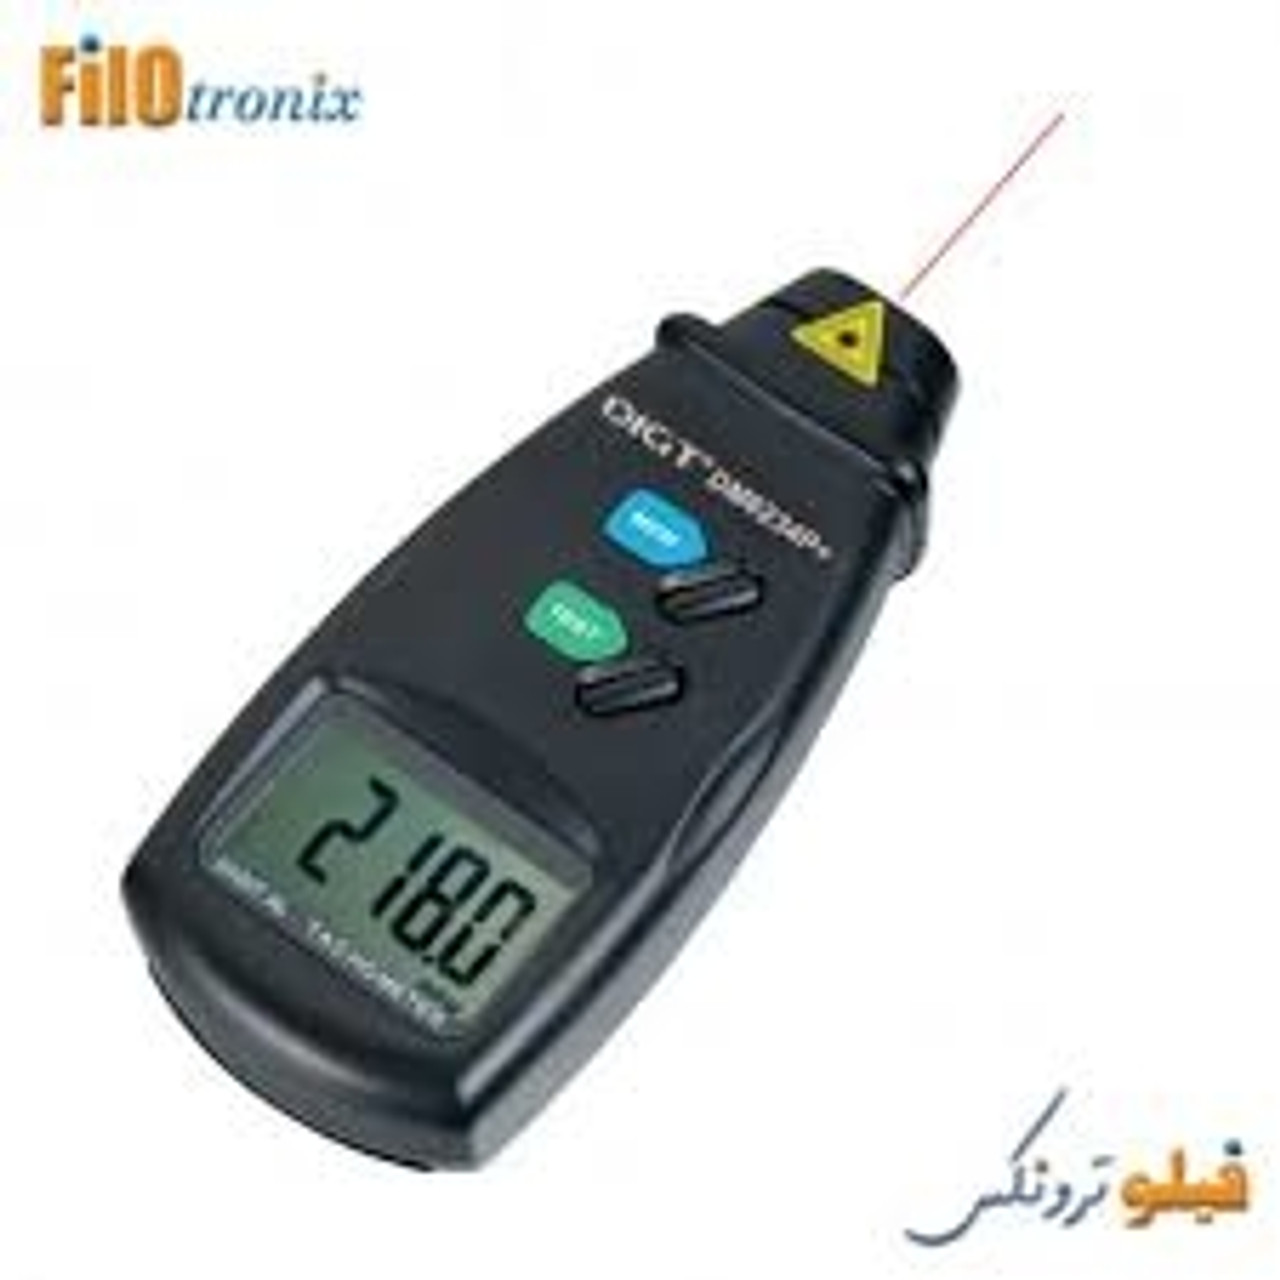 Buy online Digital tachometer HP-9236C Holdpeak from GZ Industrial supplies  in Nigeria.